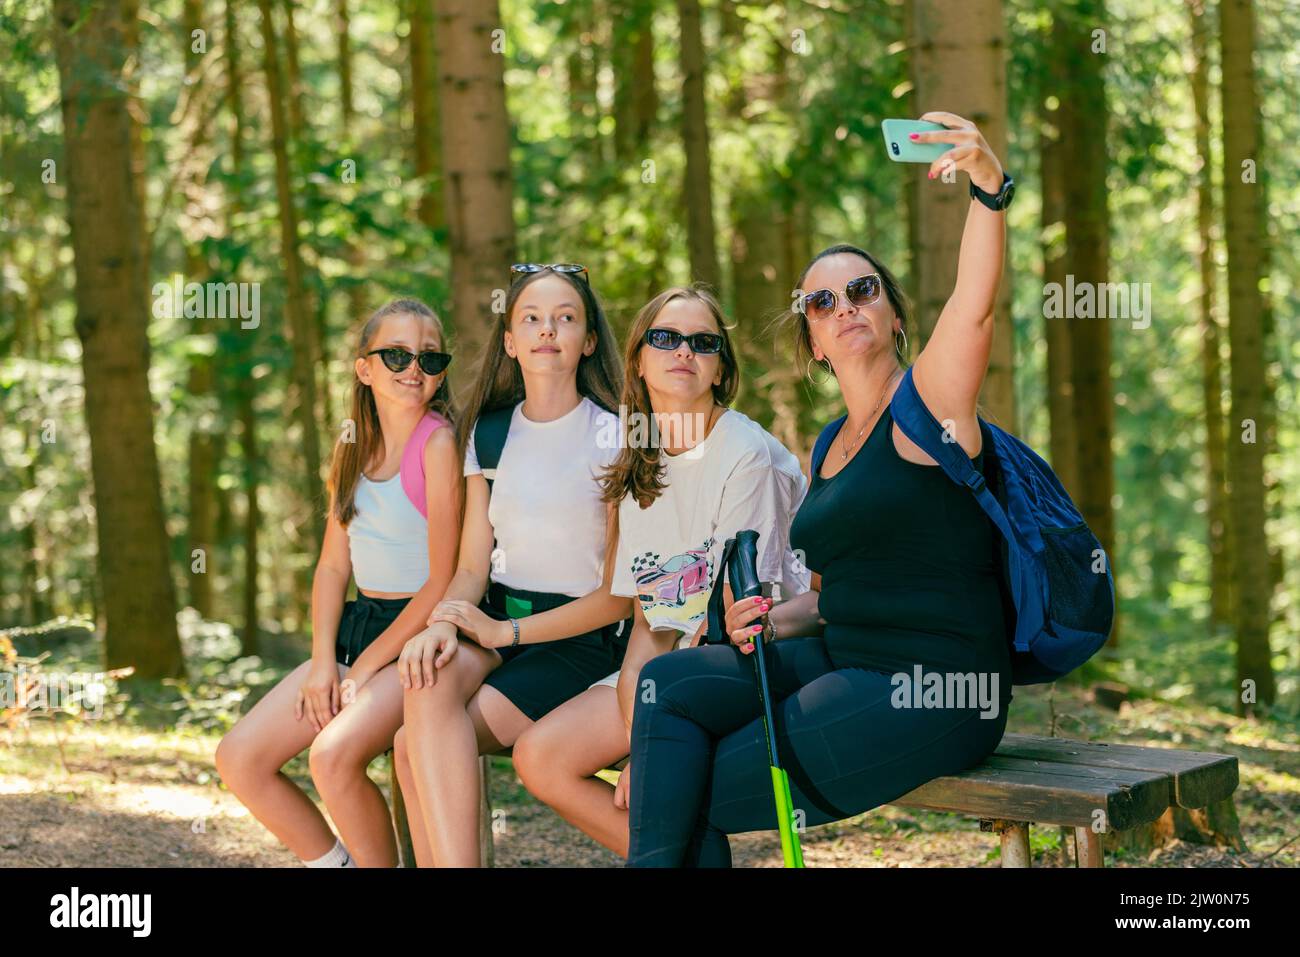 Los montañeros toman selfie con el teléfono en un banco de madera. Bosque en el fondo Foto de stock